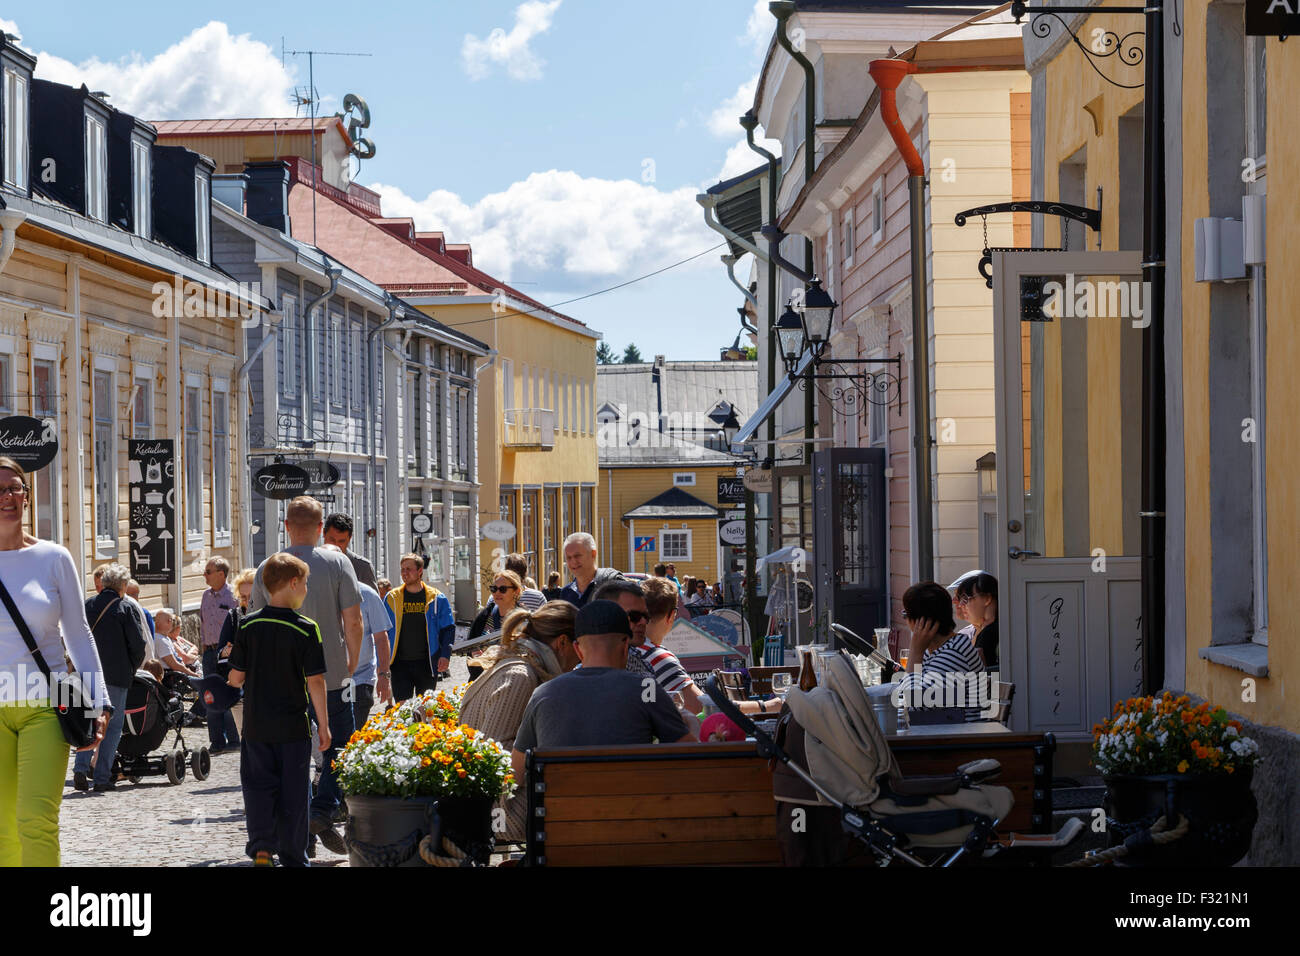 Città di Porvoo pittoresca strada con i negozi di caffè, negozi d'arte e viaggiatori provenienti da tutto il mondo. Foto Stock